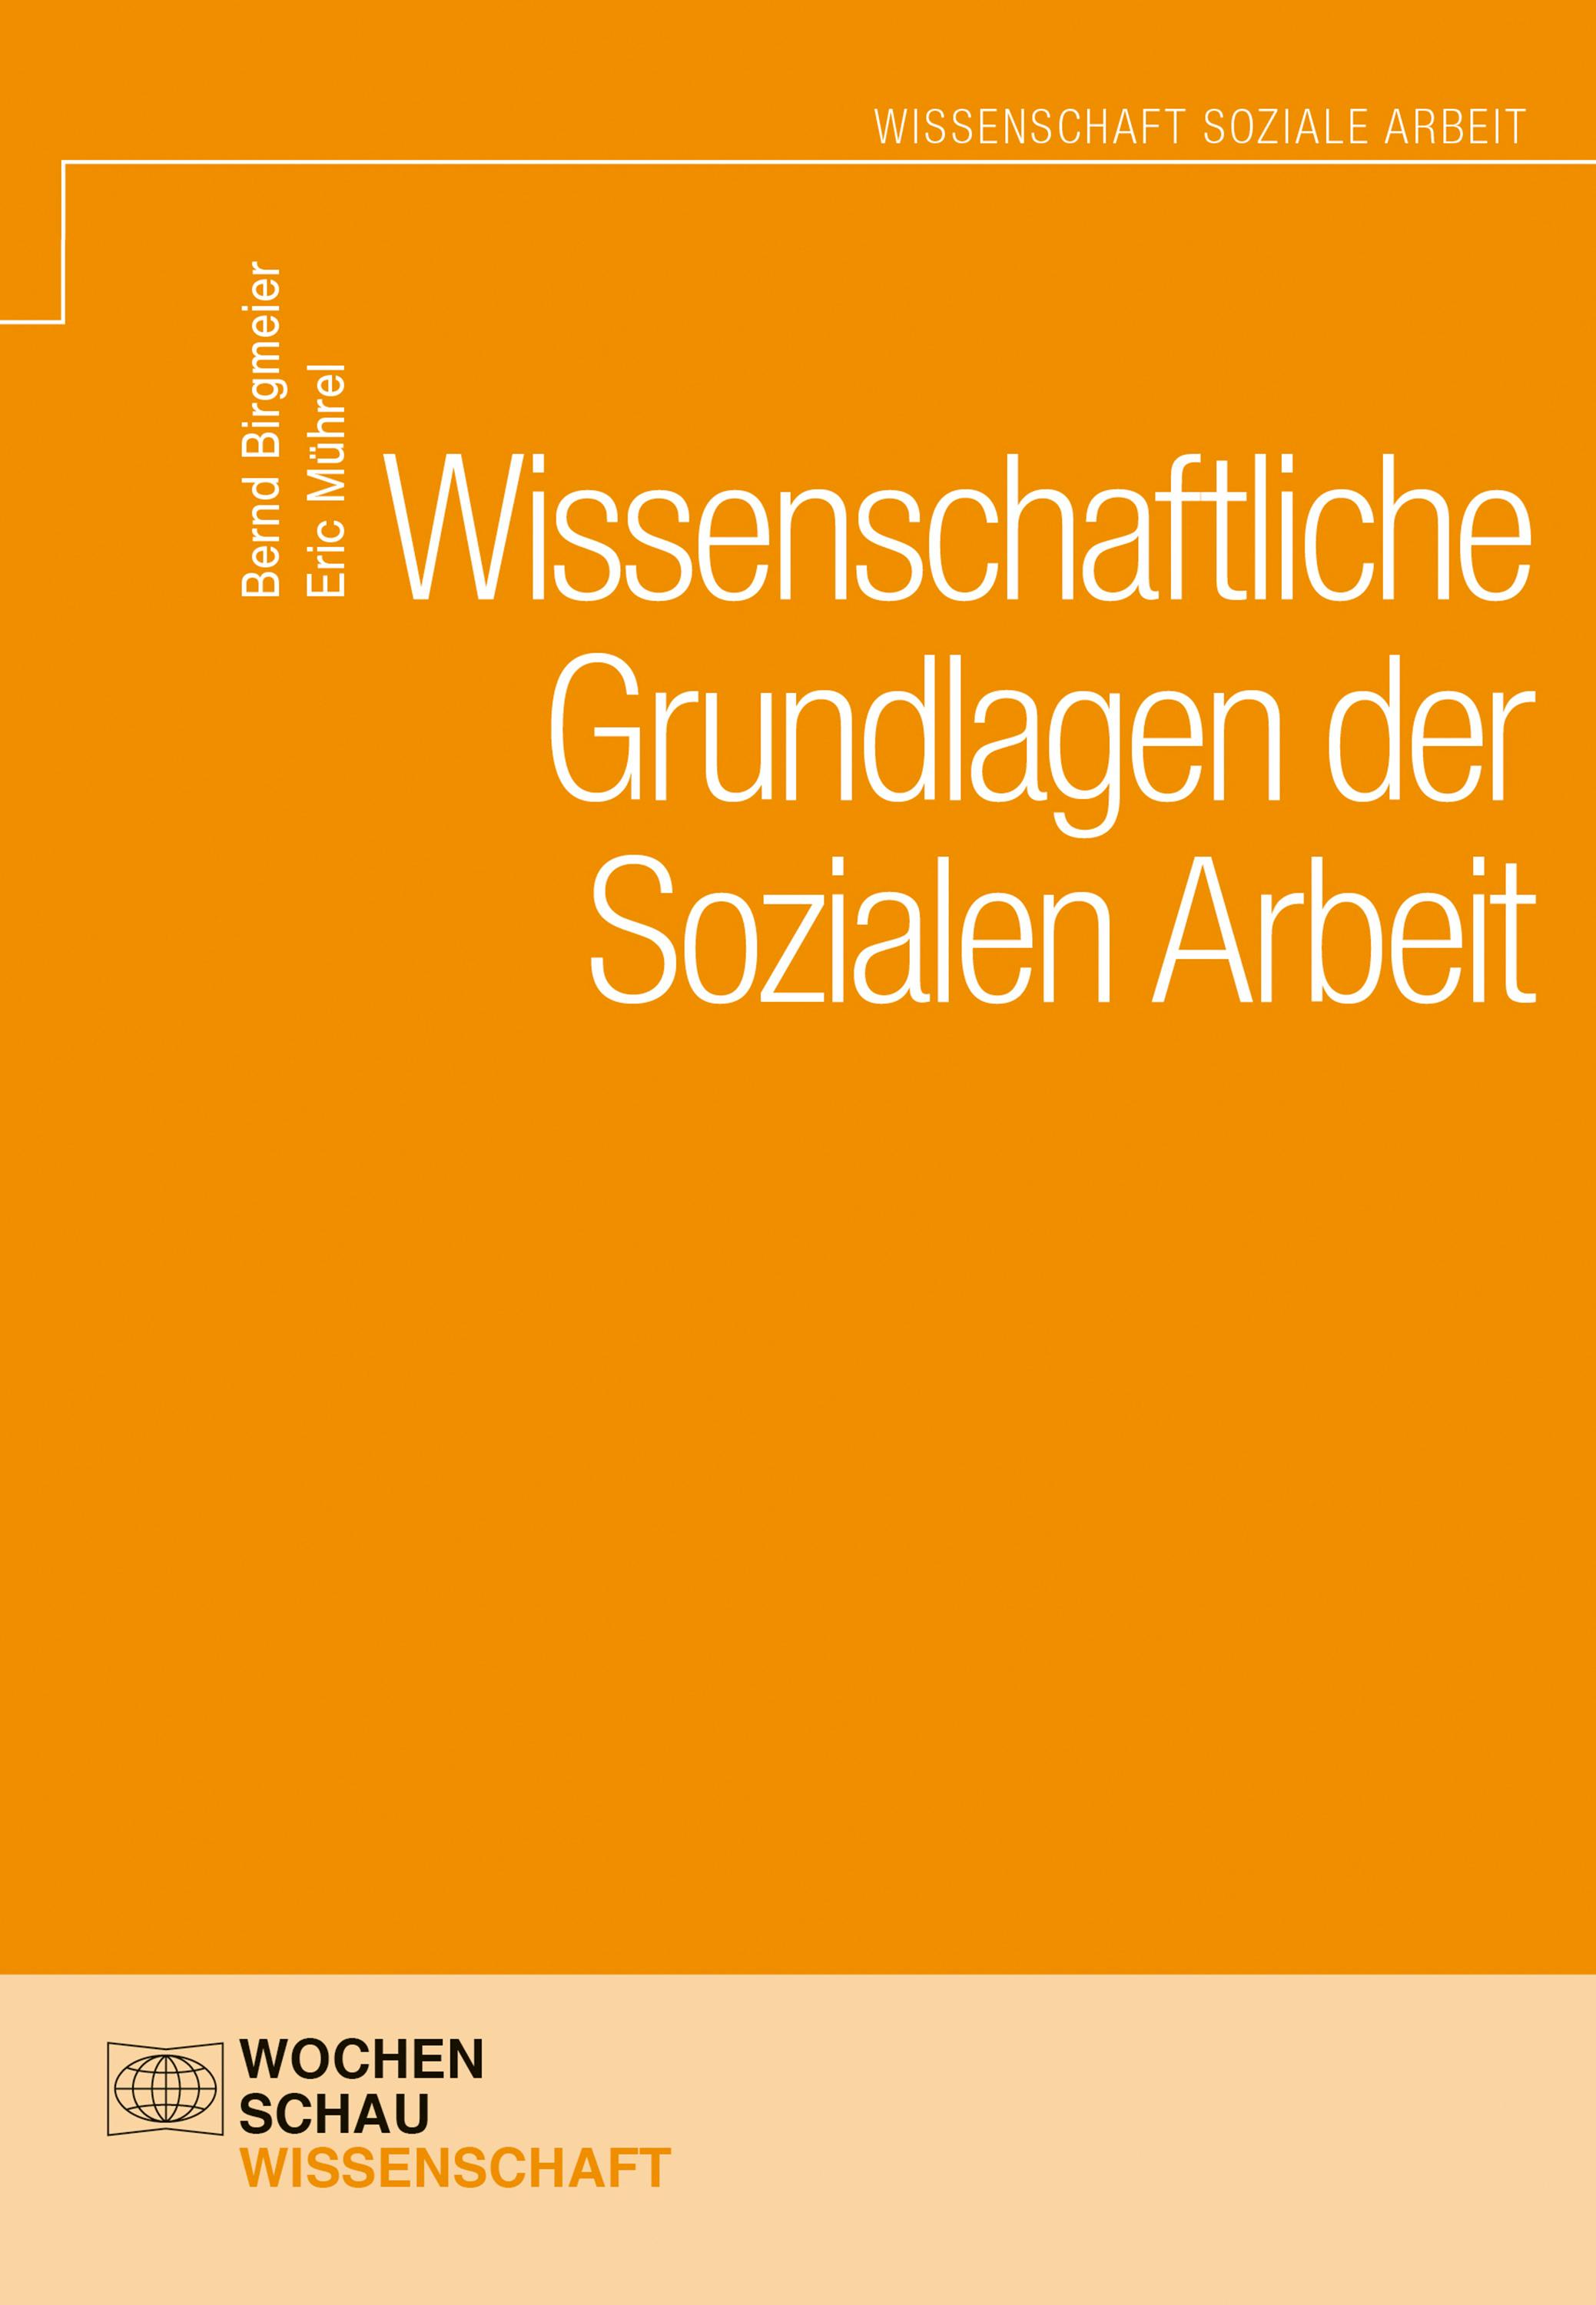 Wissenschaftliche Grundlagen der Sozialen Arbeit - Eric Mührel, Bernd Birgmeier